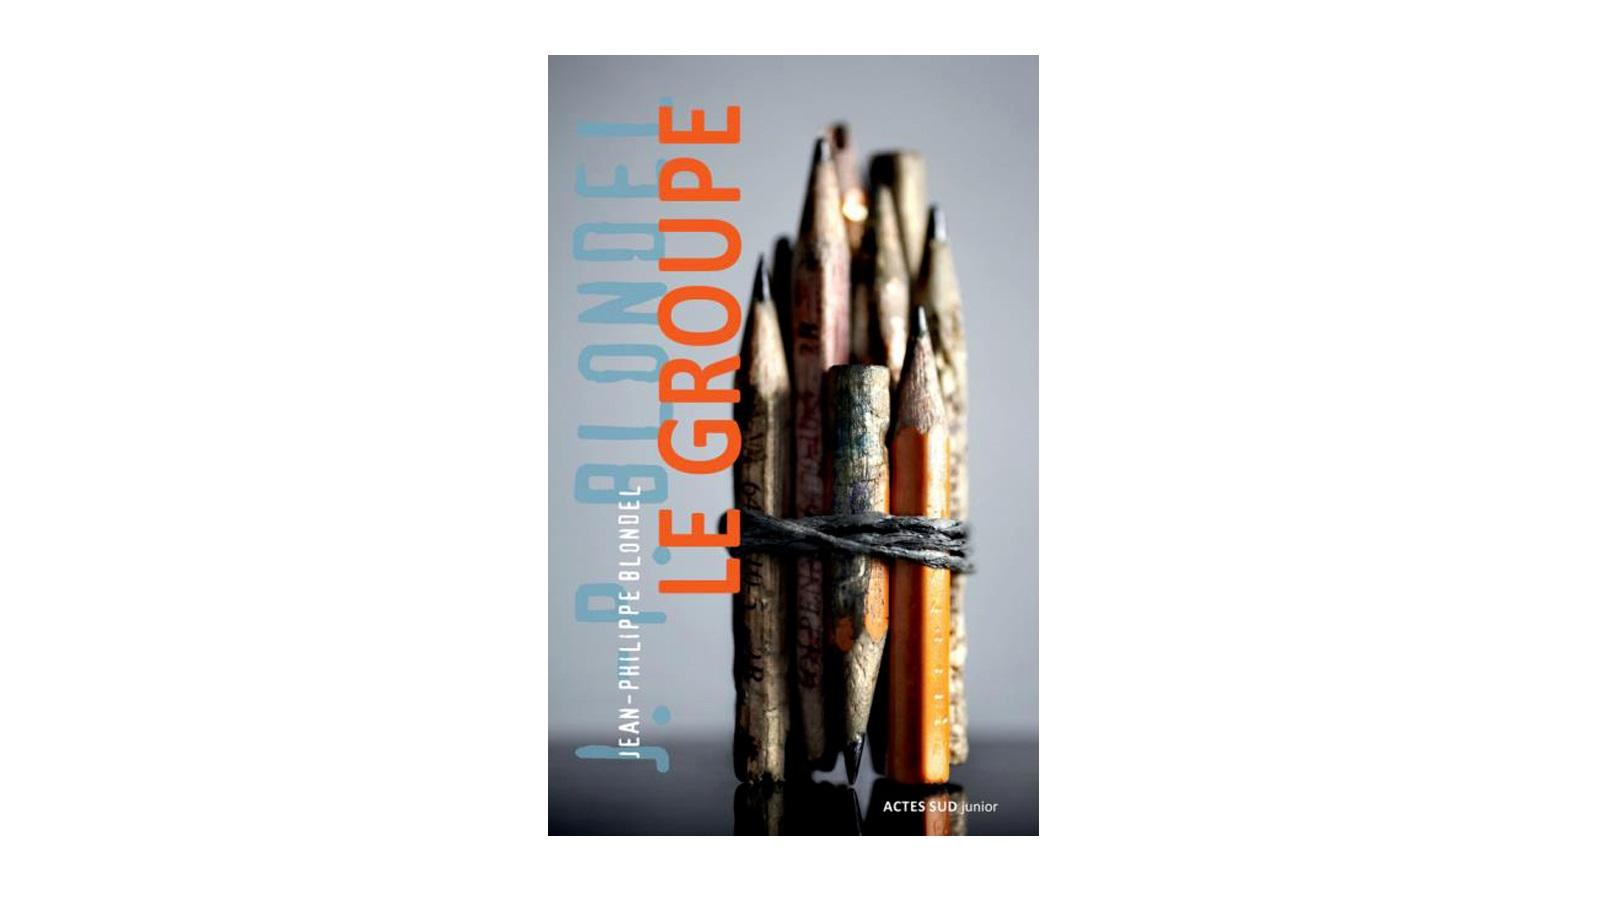 La couverture du livre Le Groupe, de Jean-Philippe Blondel, paru chez Actes Sud junior.Actes Sud junior [Actes Sud junior]